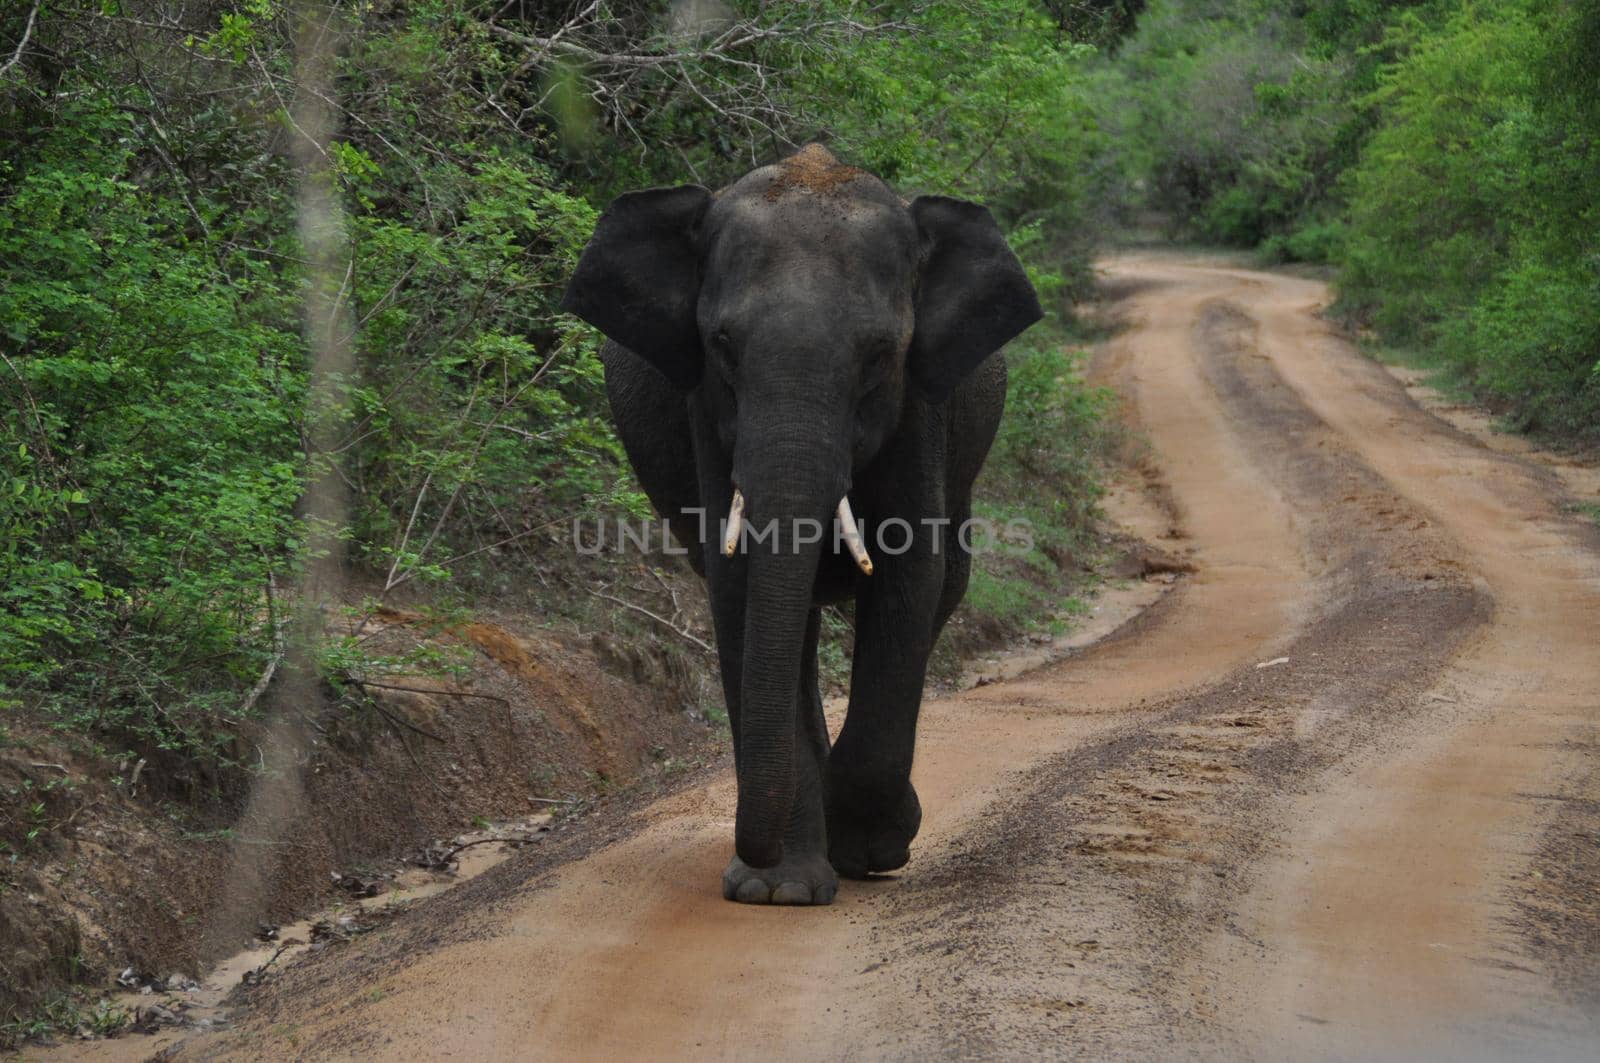 Elephant in Yala National Park, Sri Lanka by Capos